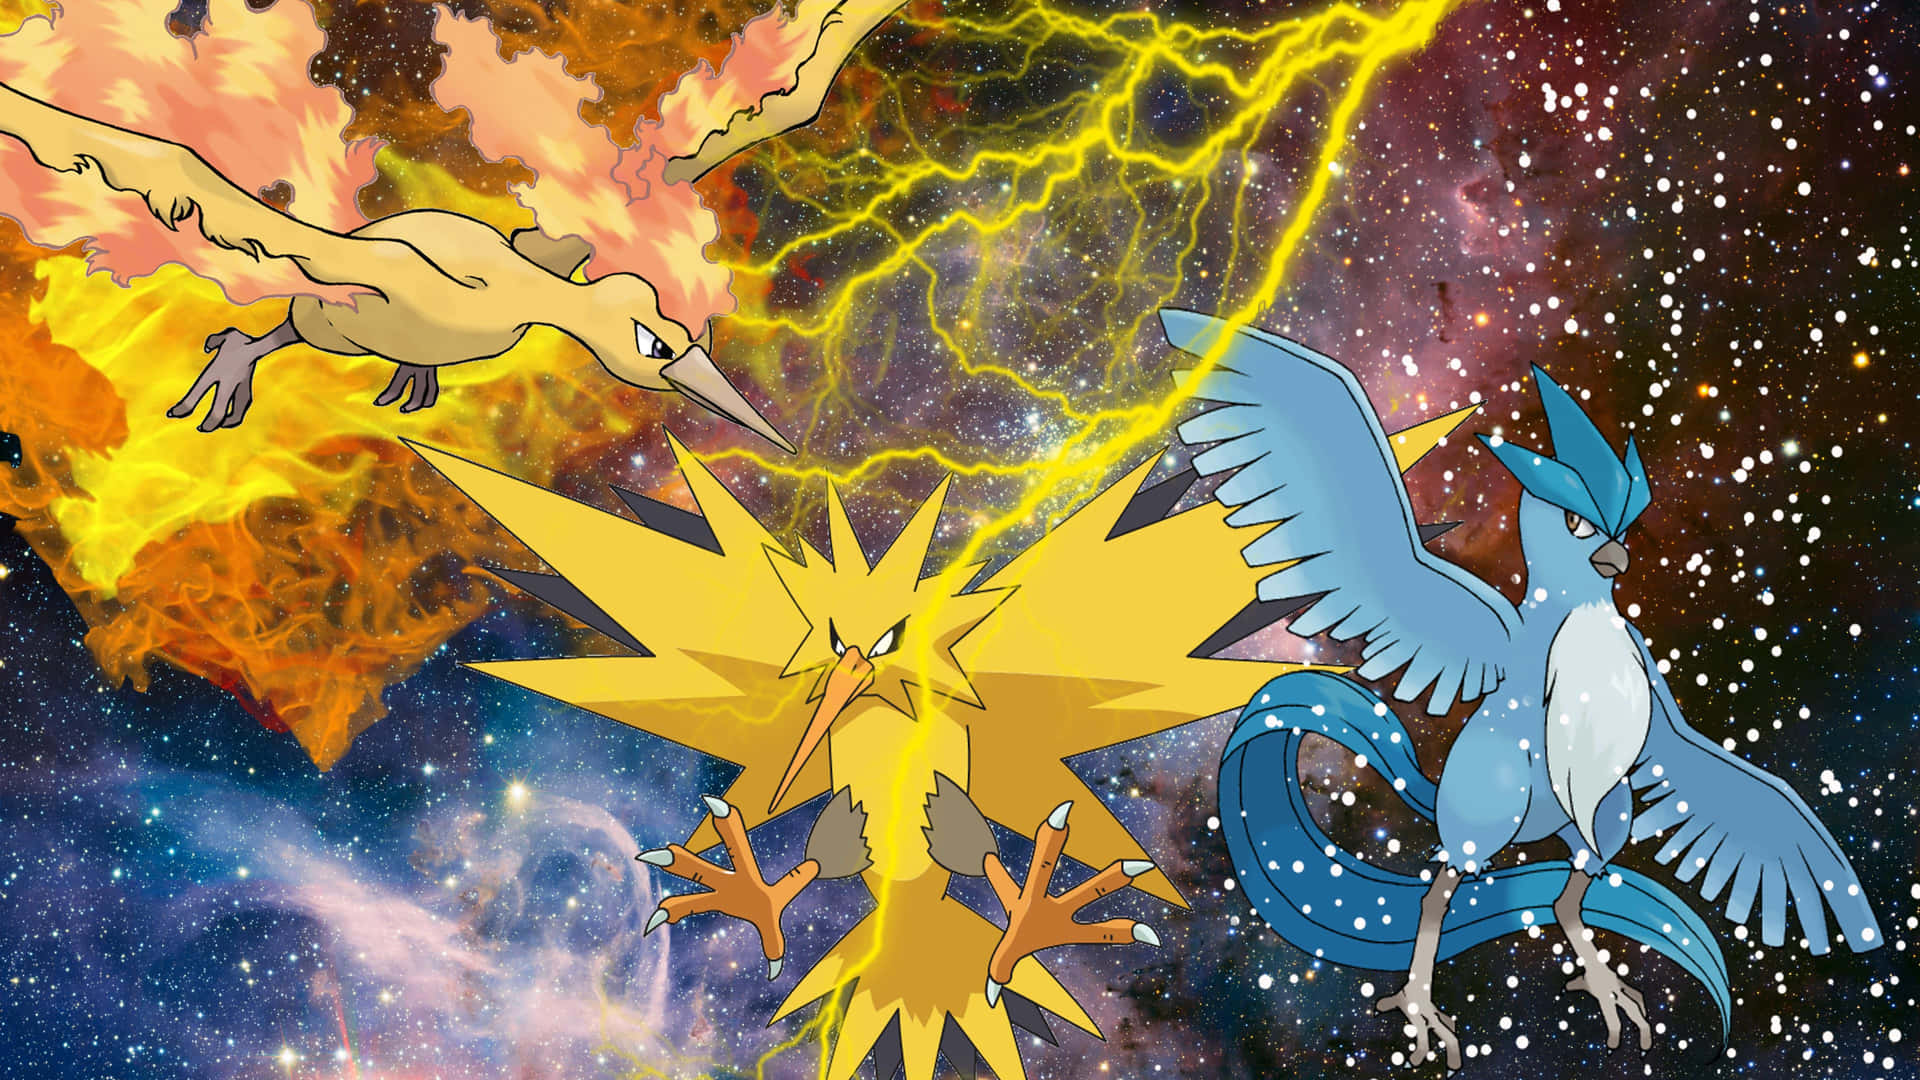 Moltres Ascending - Legendary Pokemon In Flight Wallpaper